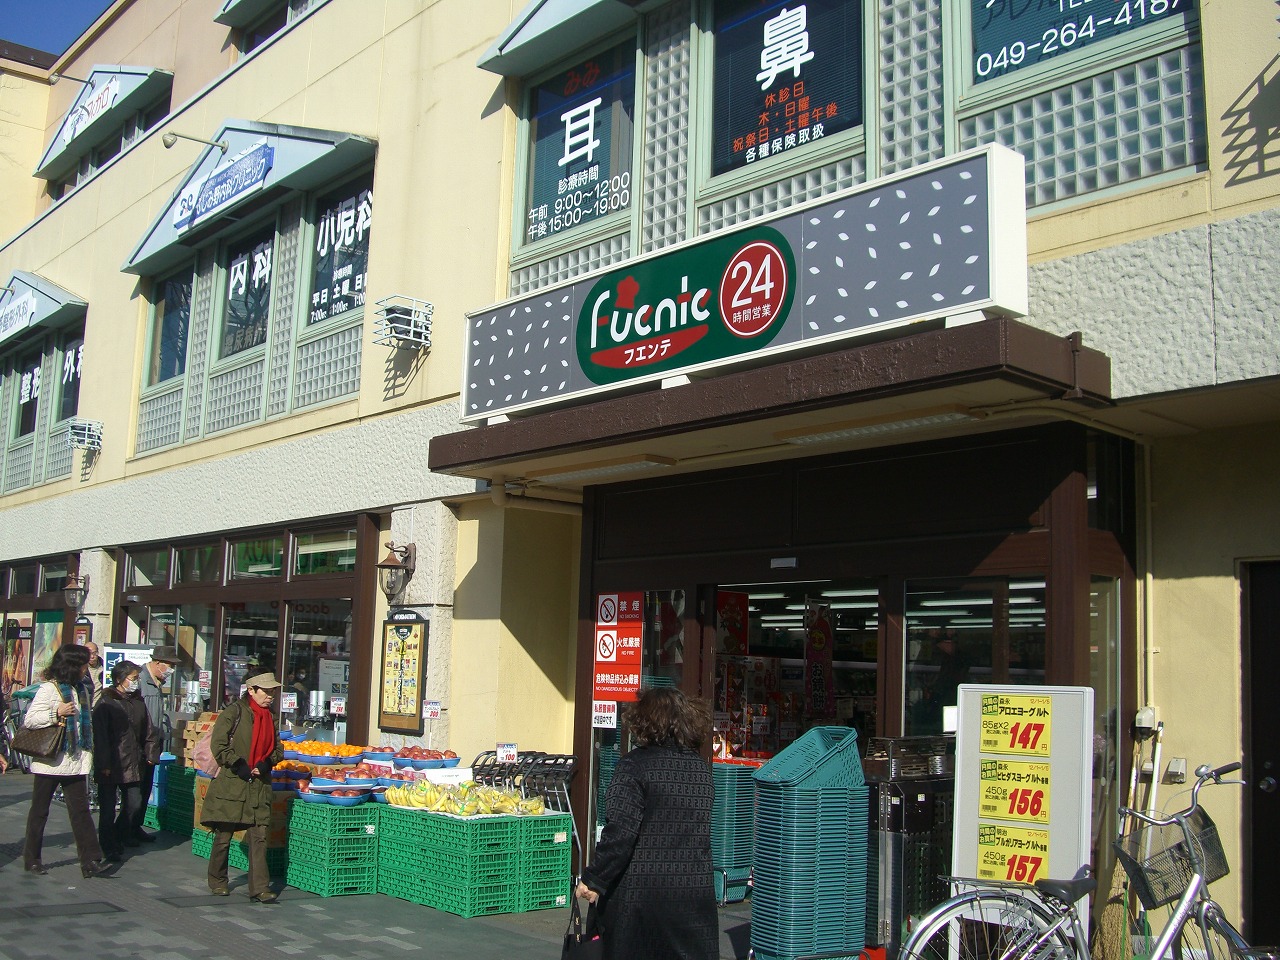 Supermarket. 384m to Tobu Store Fuente Fujimino store (Super)